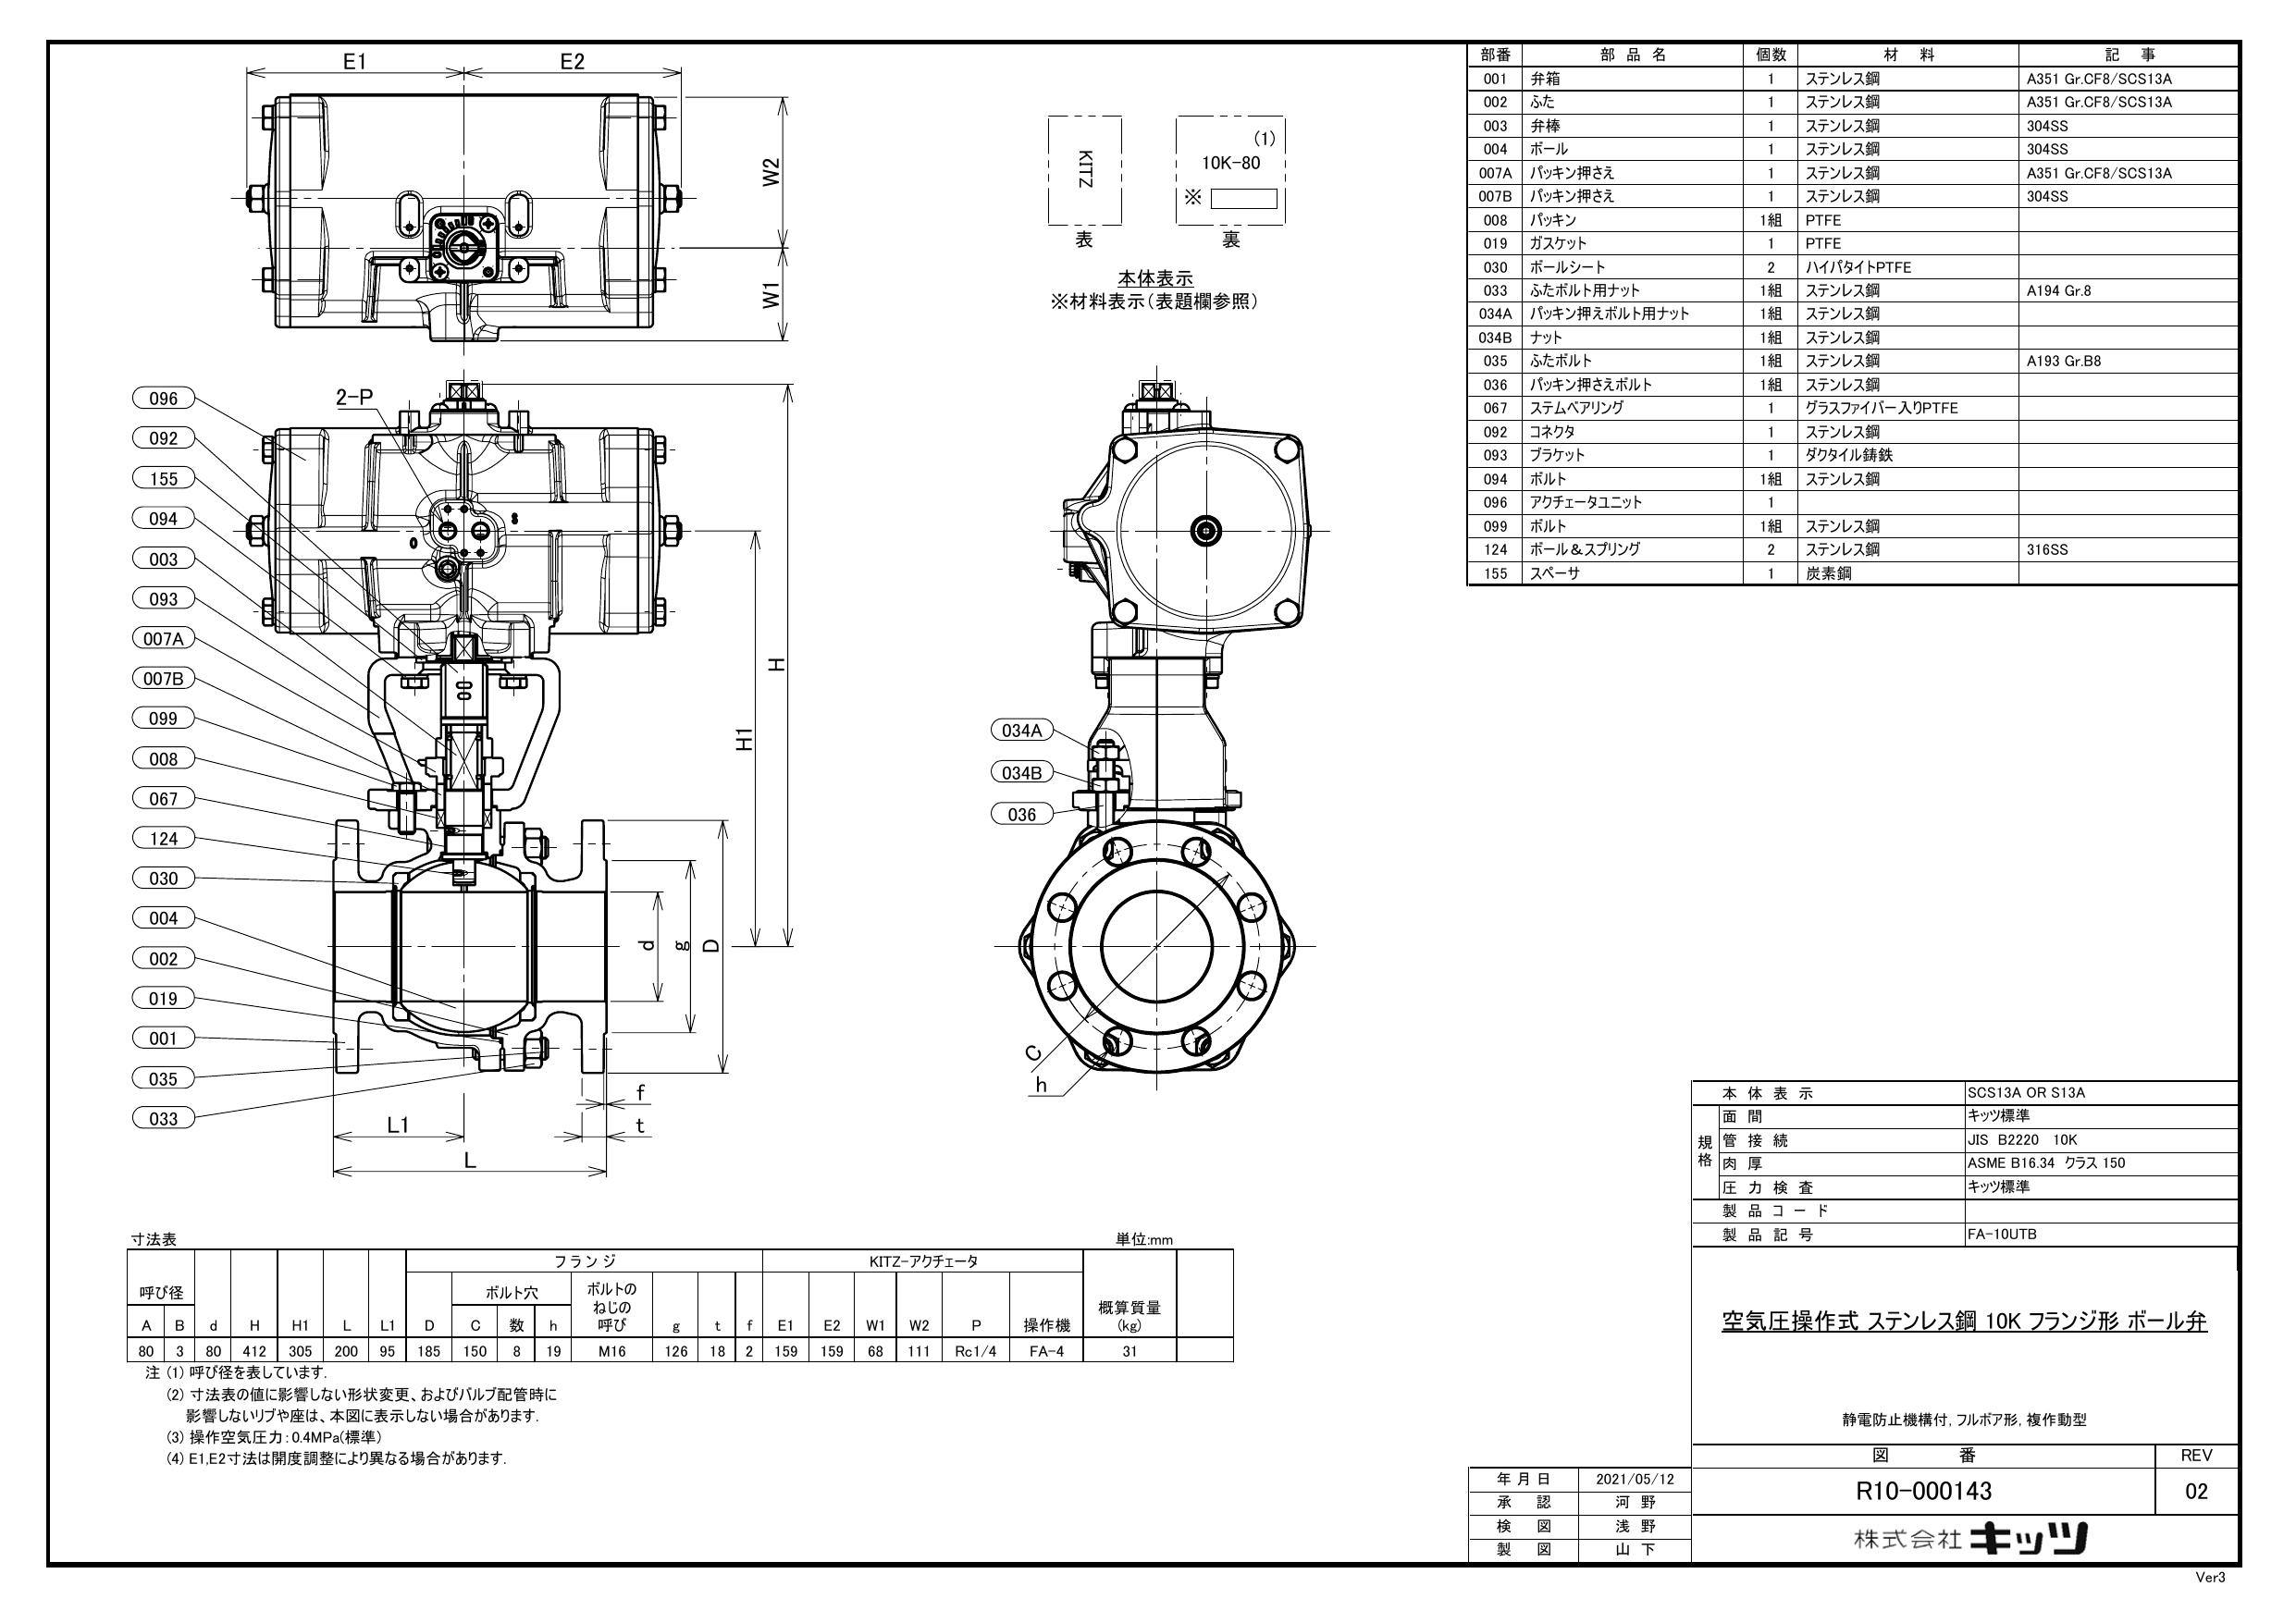 イシグロ キッツ FA-10UTB 複作動 ボール弁 80A 配管部材 空圧式自動弁